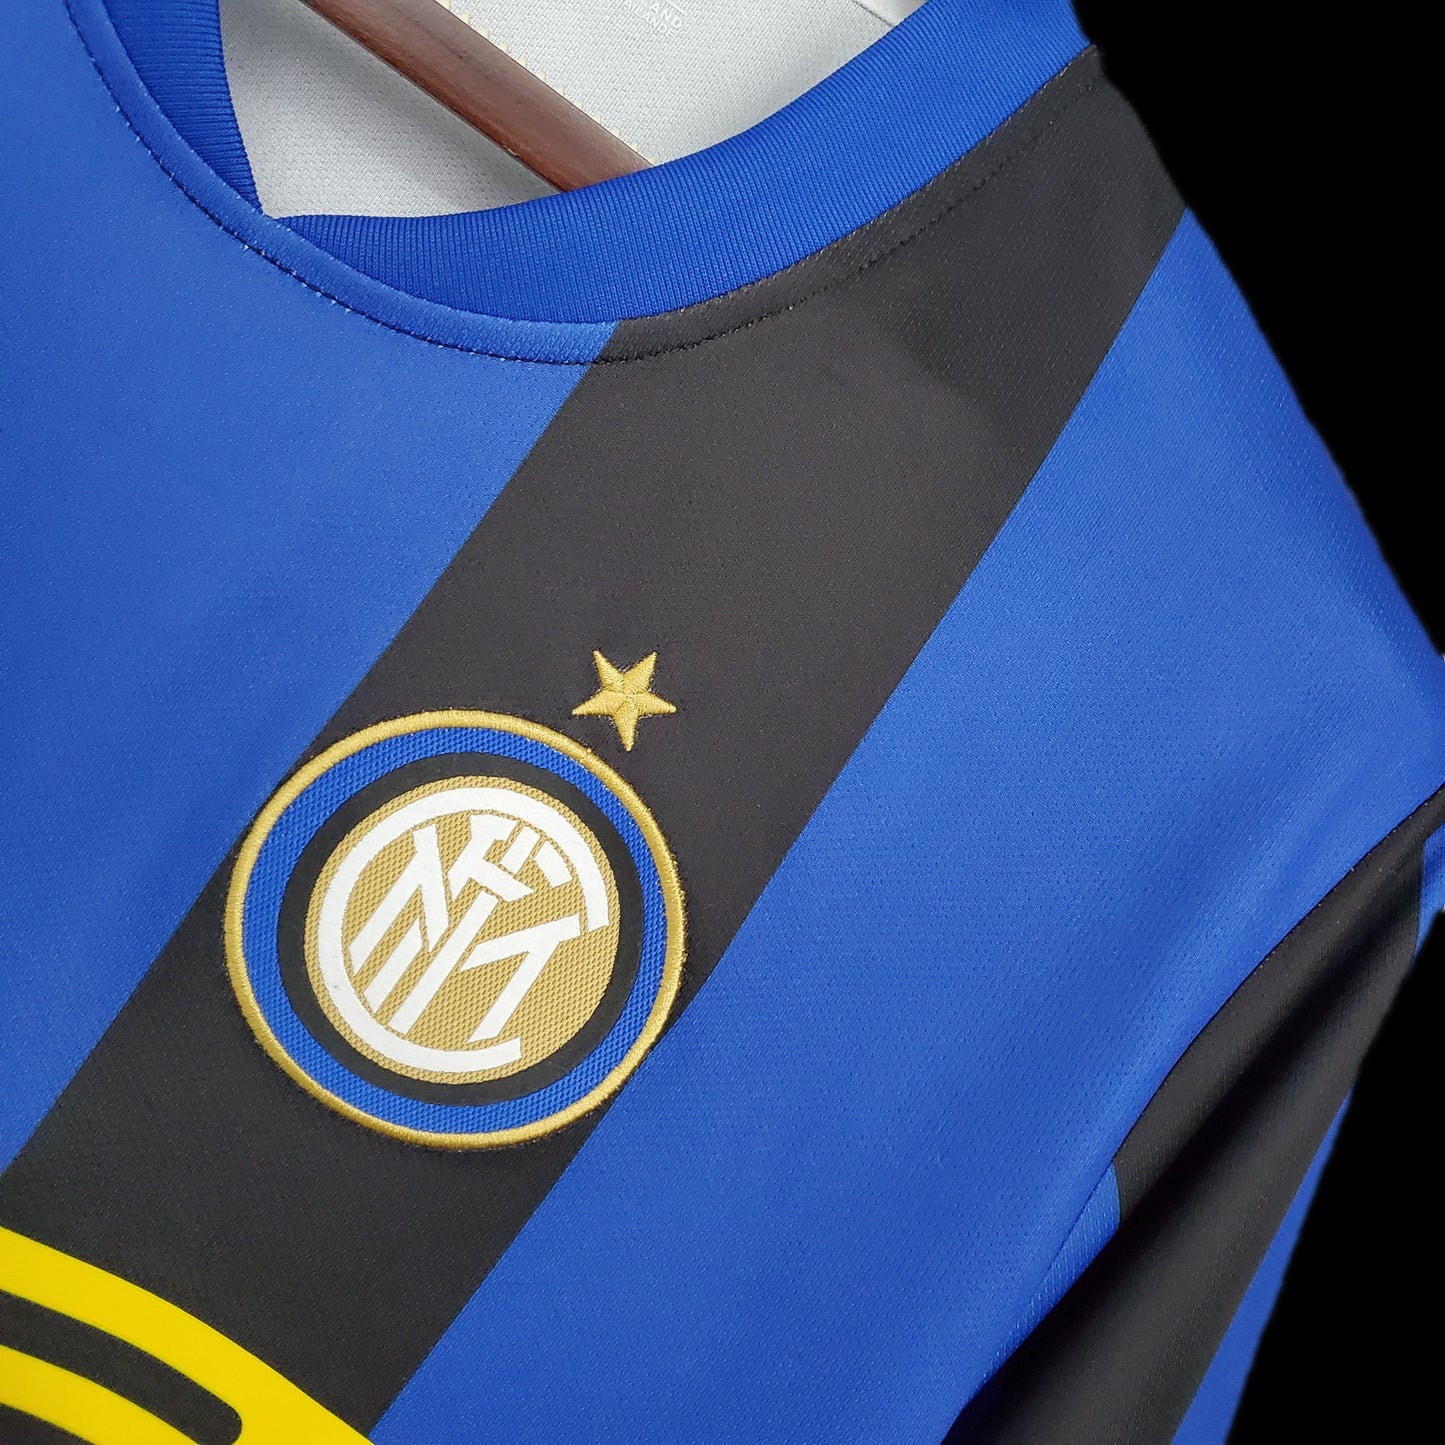 Retro 08/09 Inter Milan Home Kit